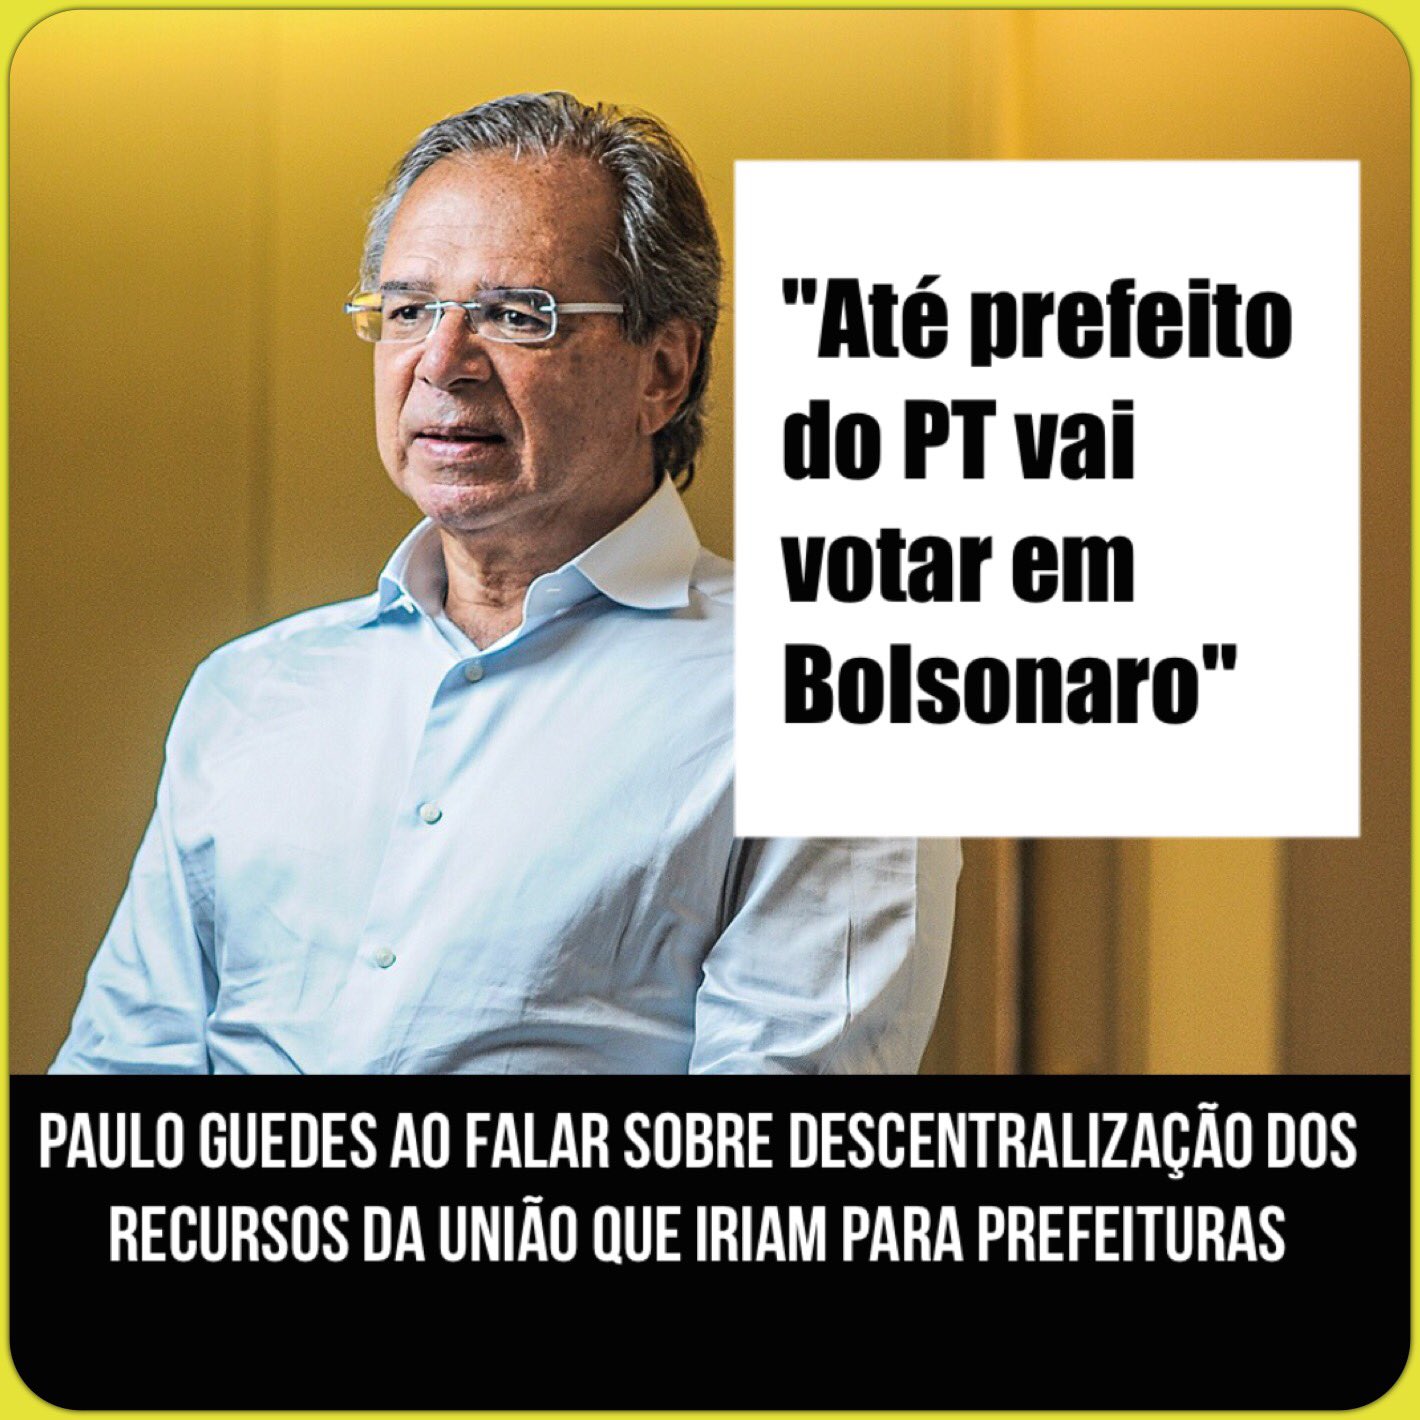 Eduardo Bolsonaro 17 on Twitter: "Live começou agora no youtube e